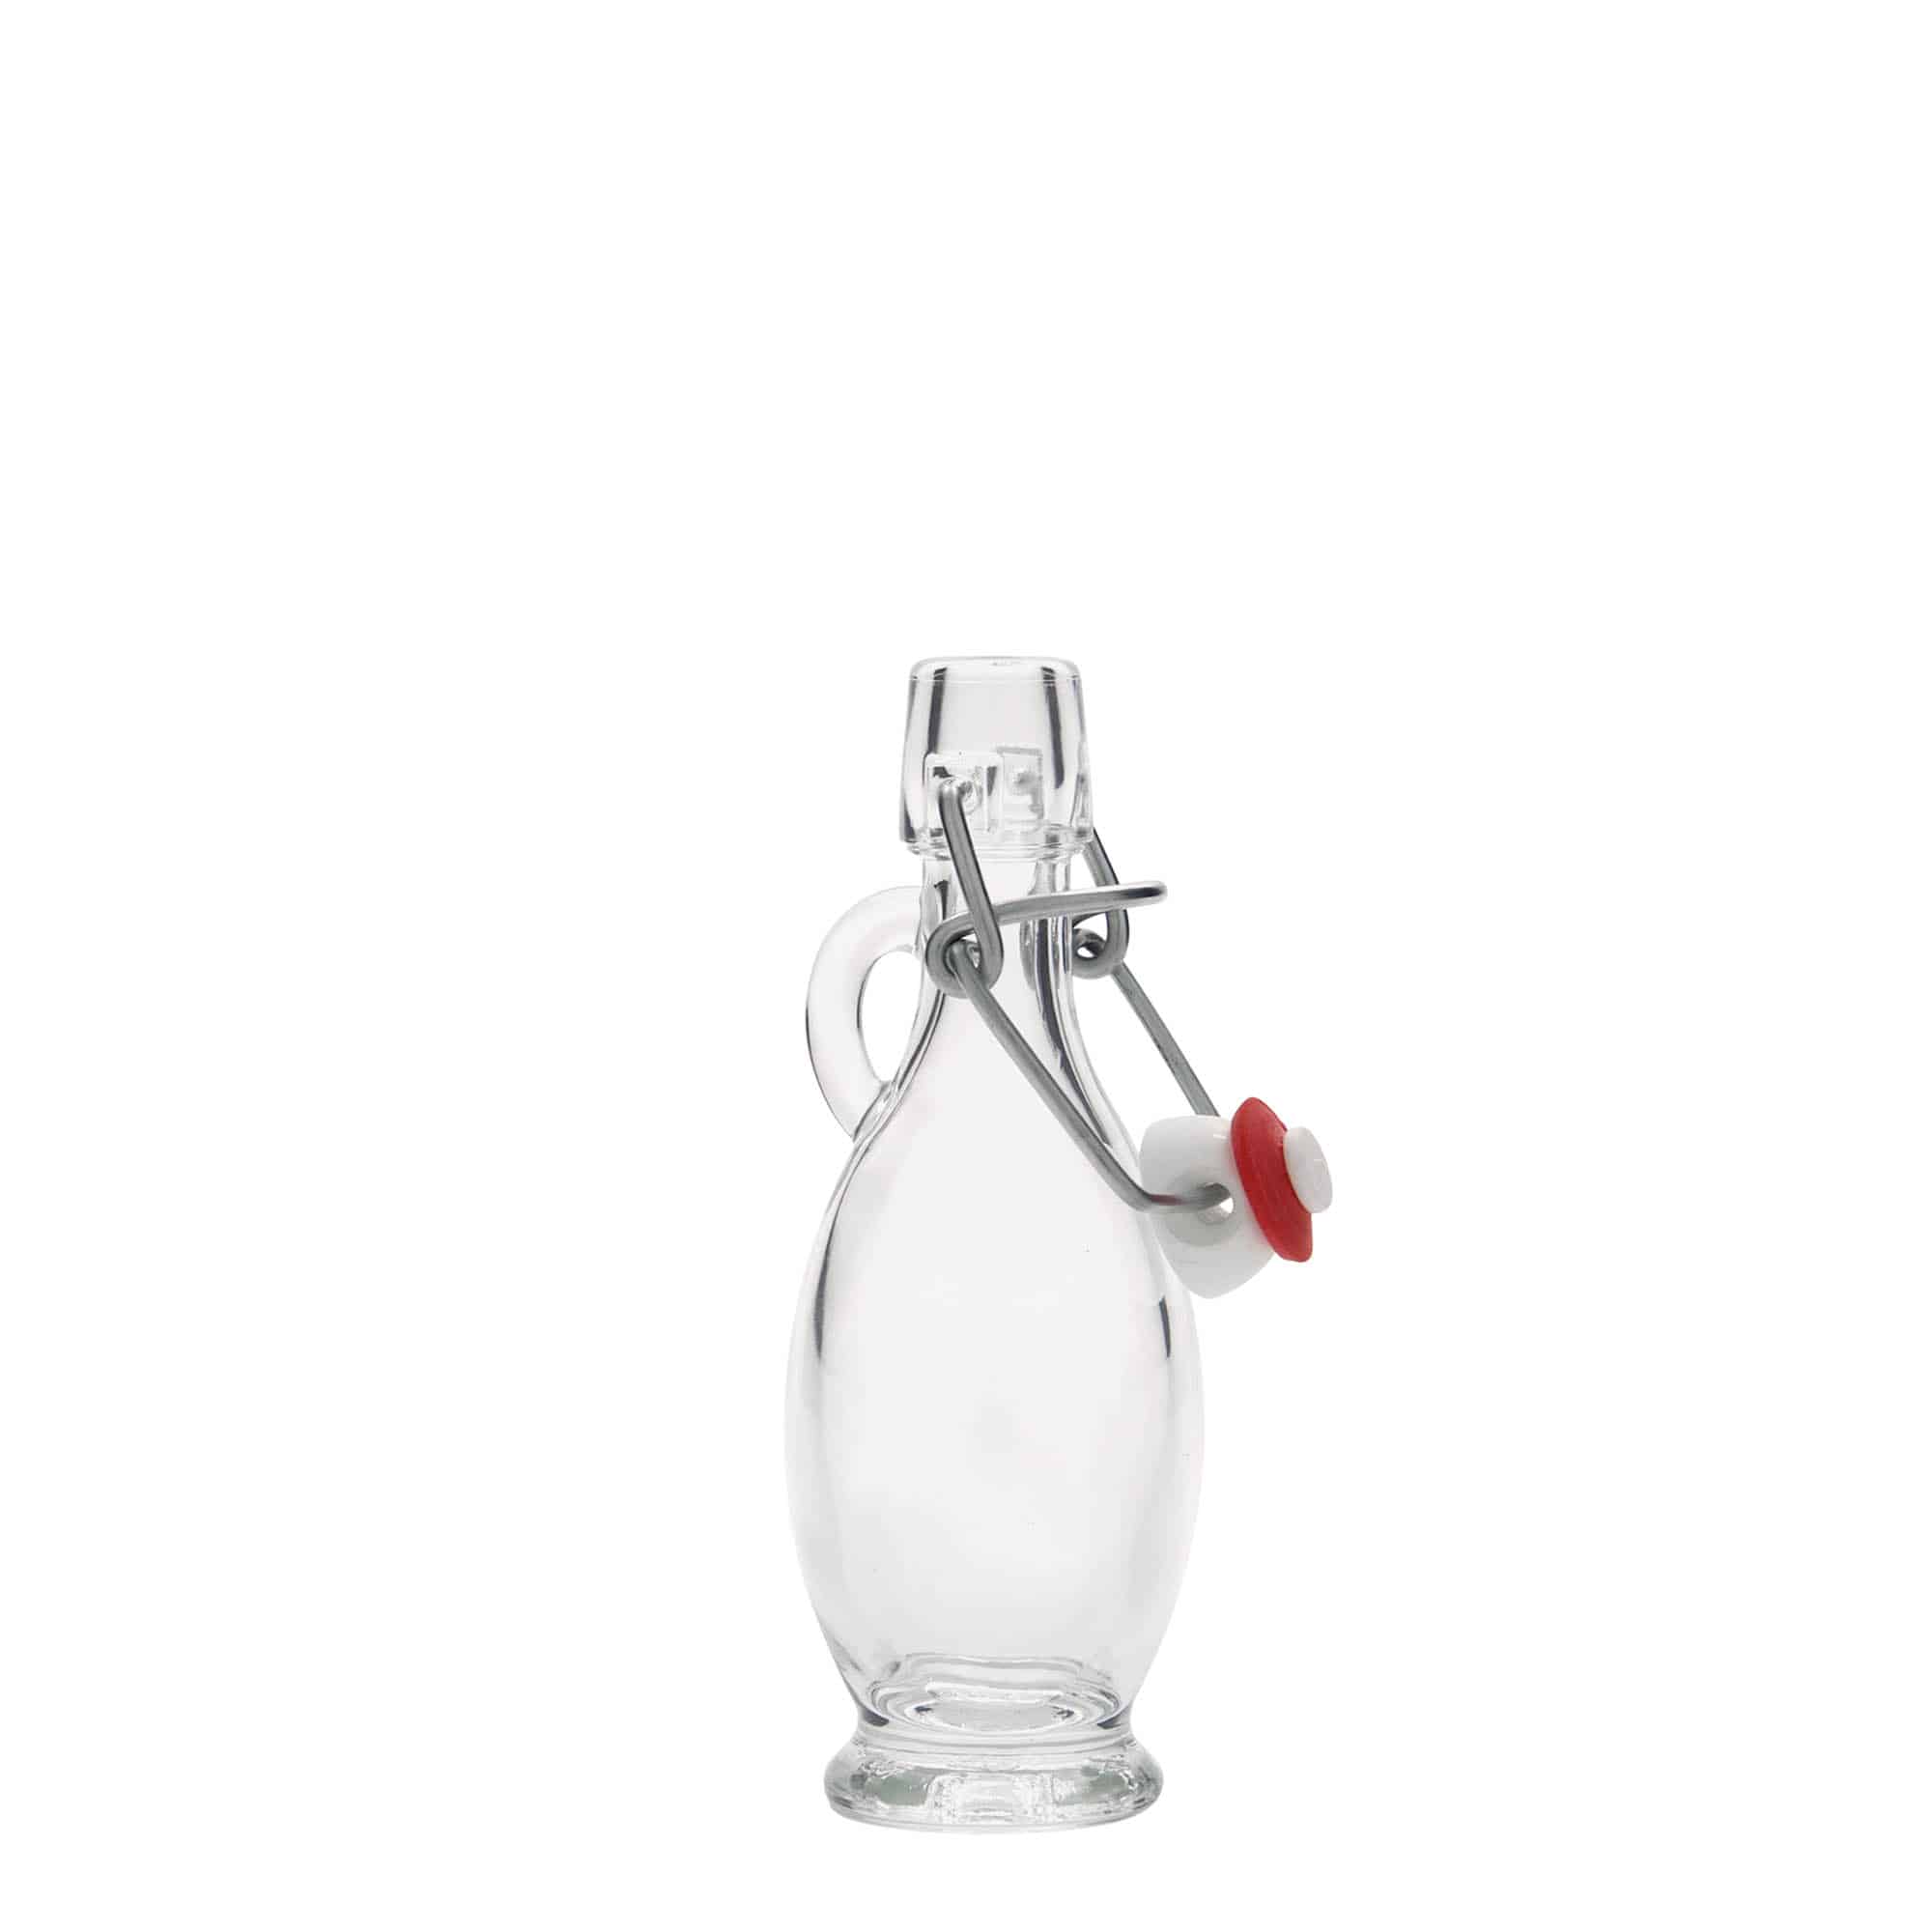 40 ml glass bottle 'Egizia', closure: swing top